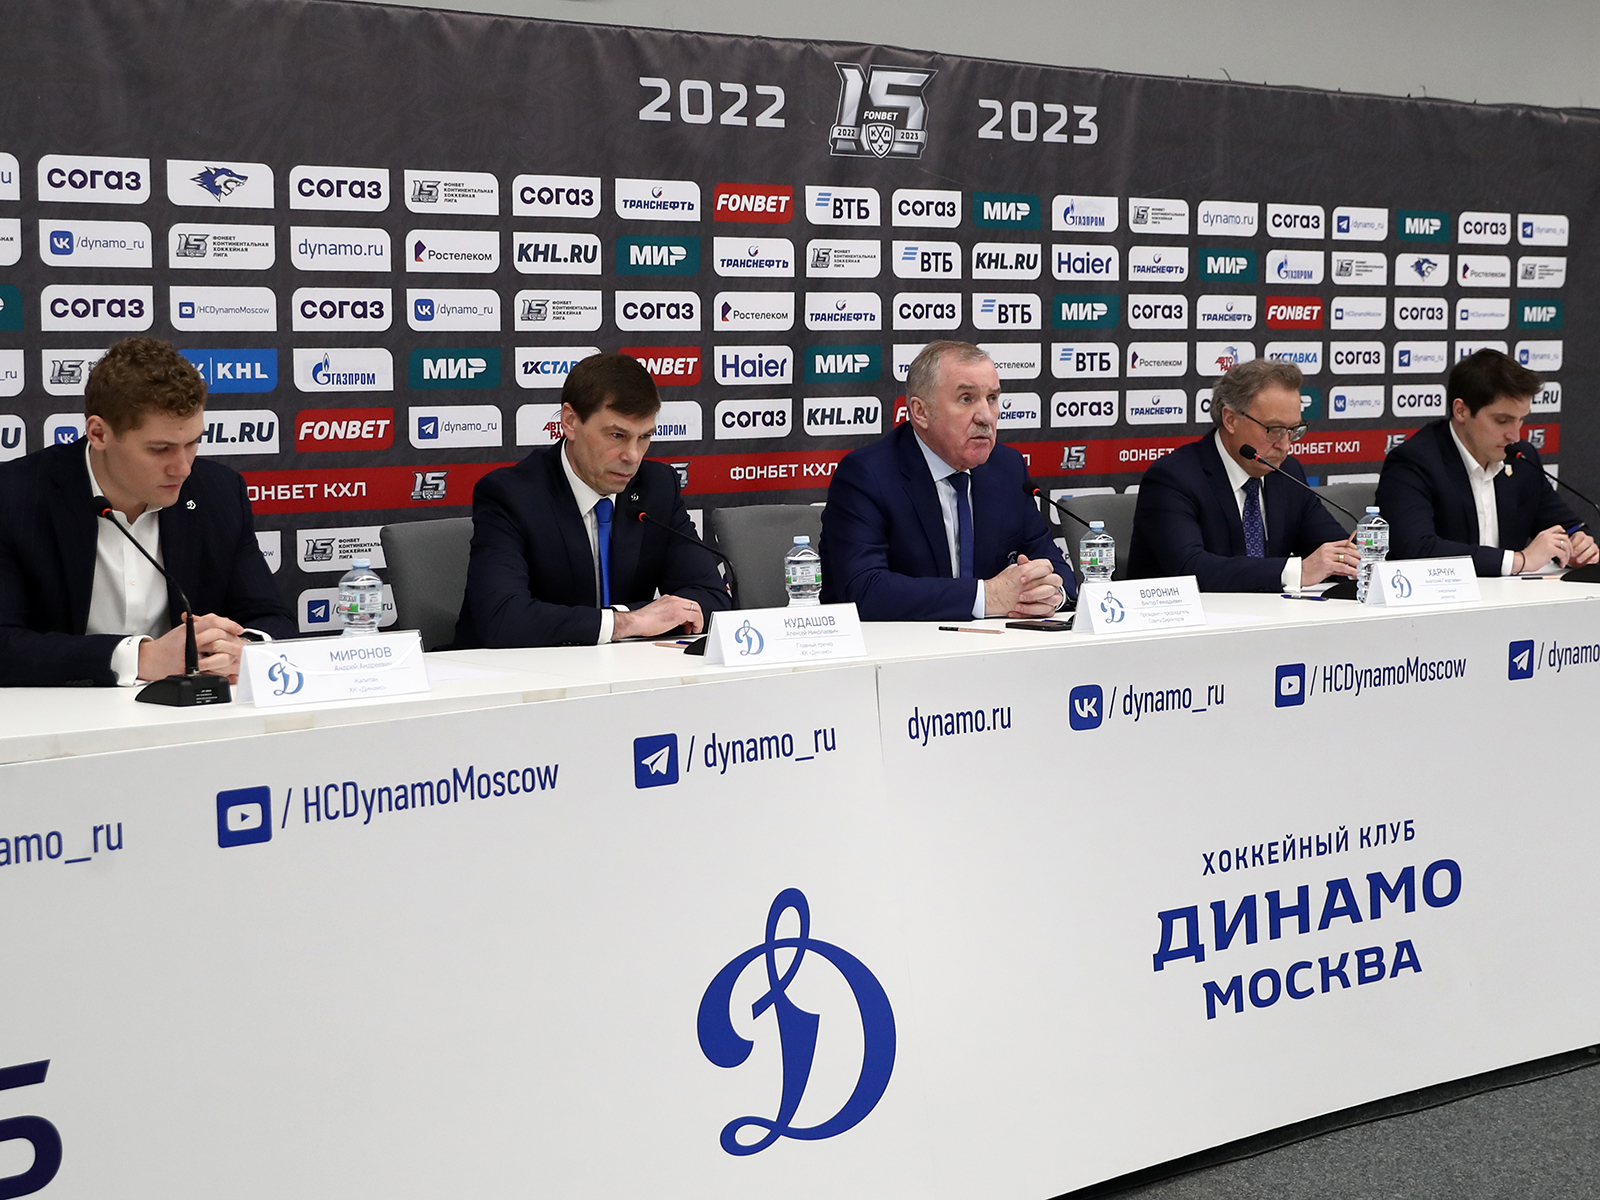 Состоялась клубная пресс-конференция по итогам сезона 2022/23